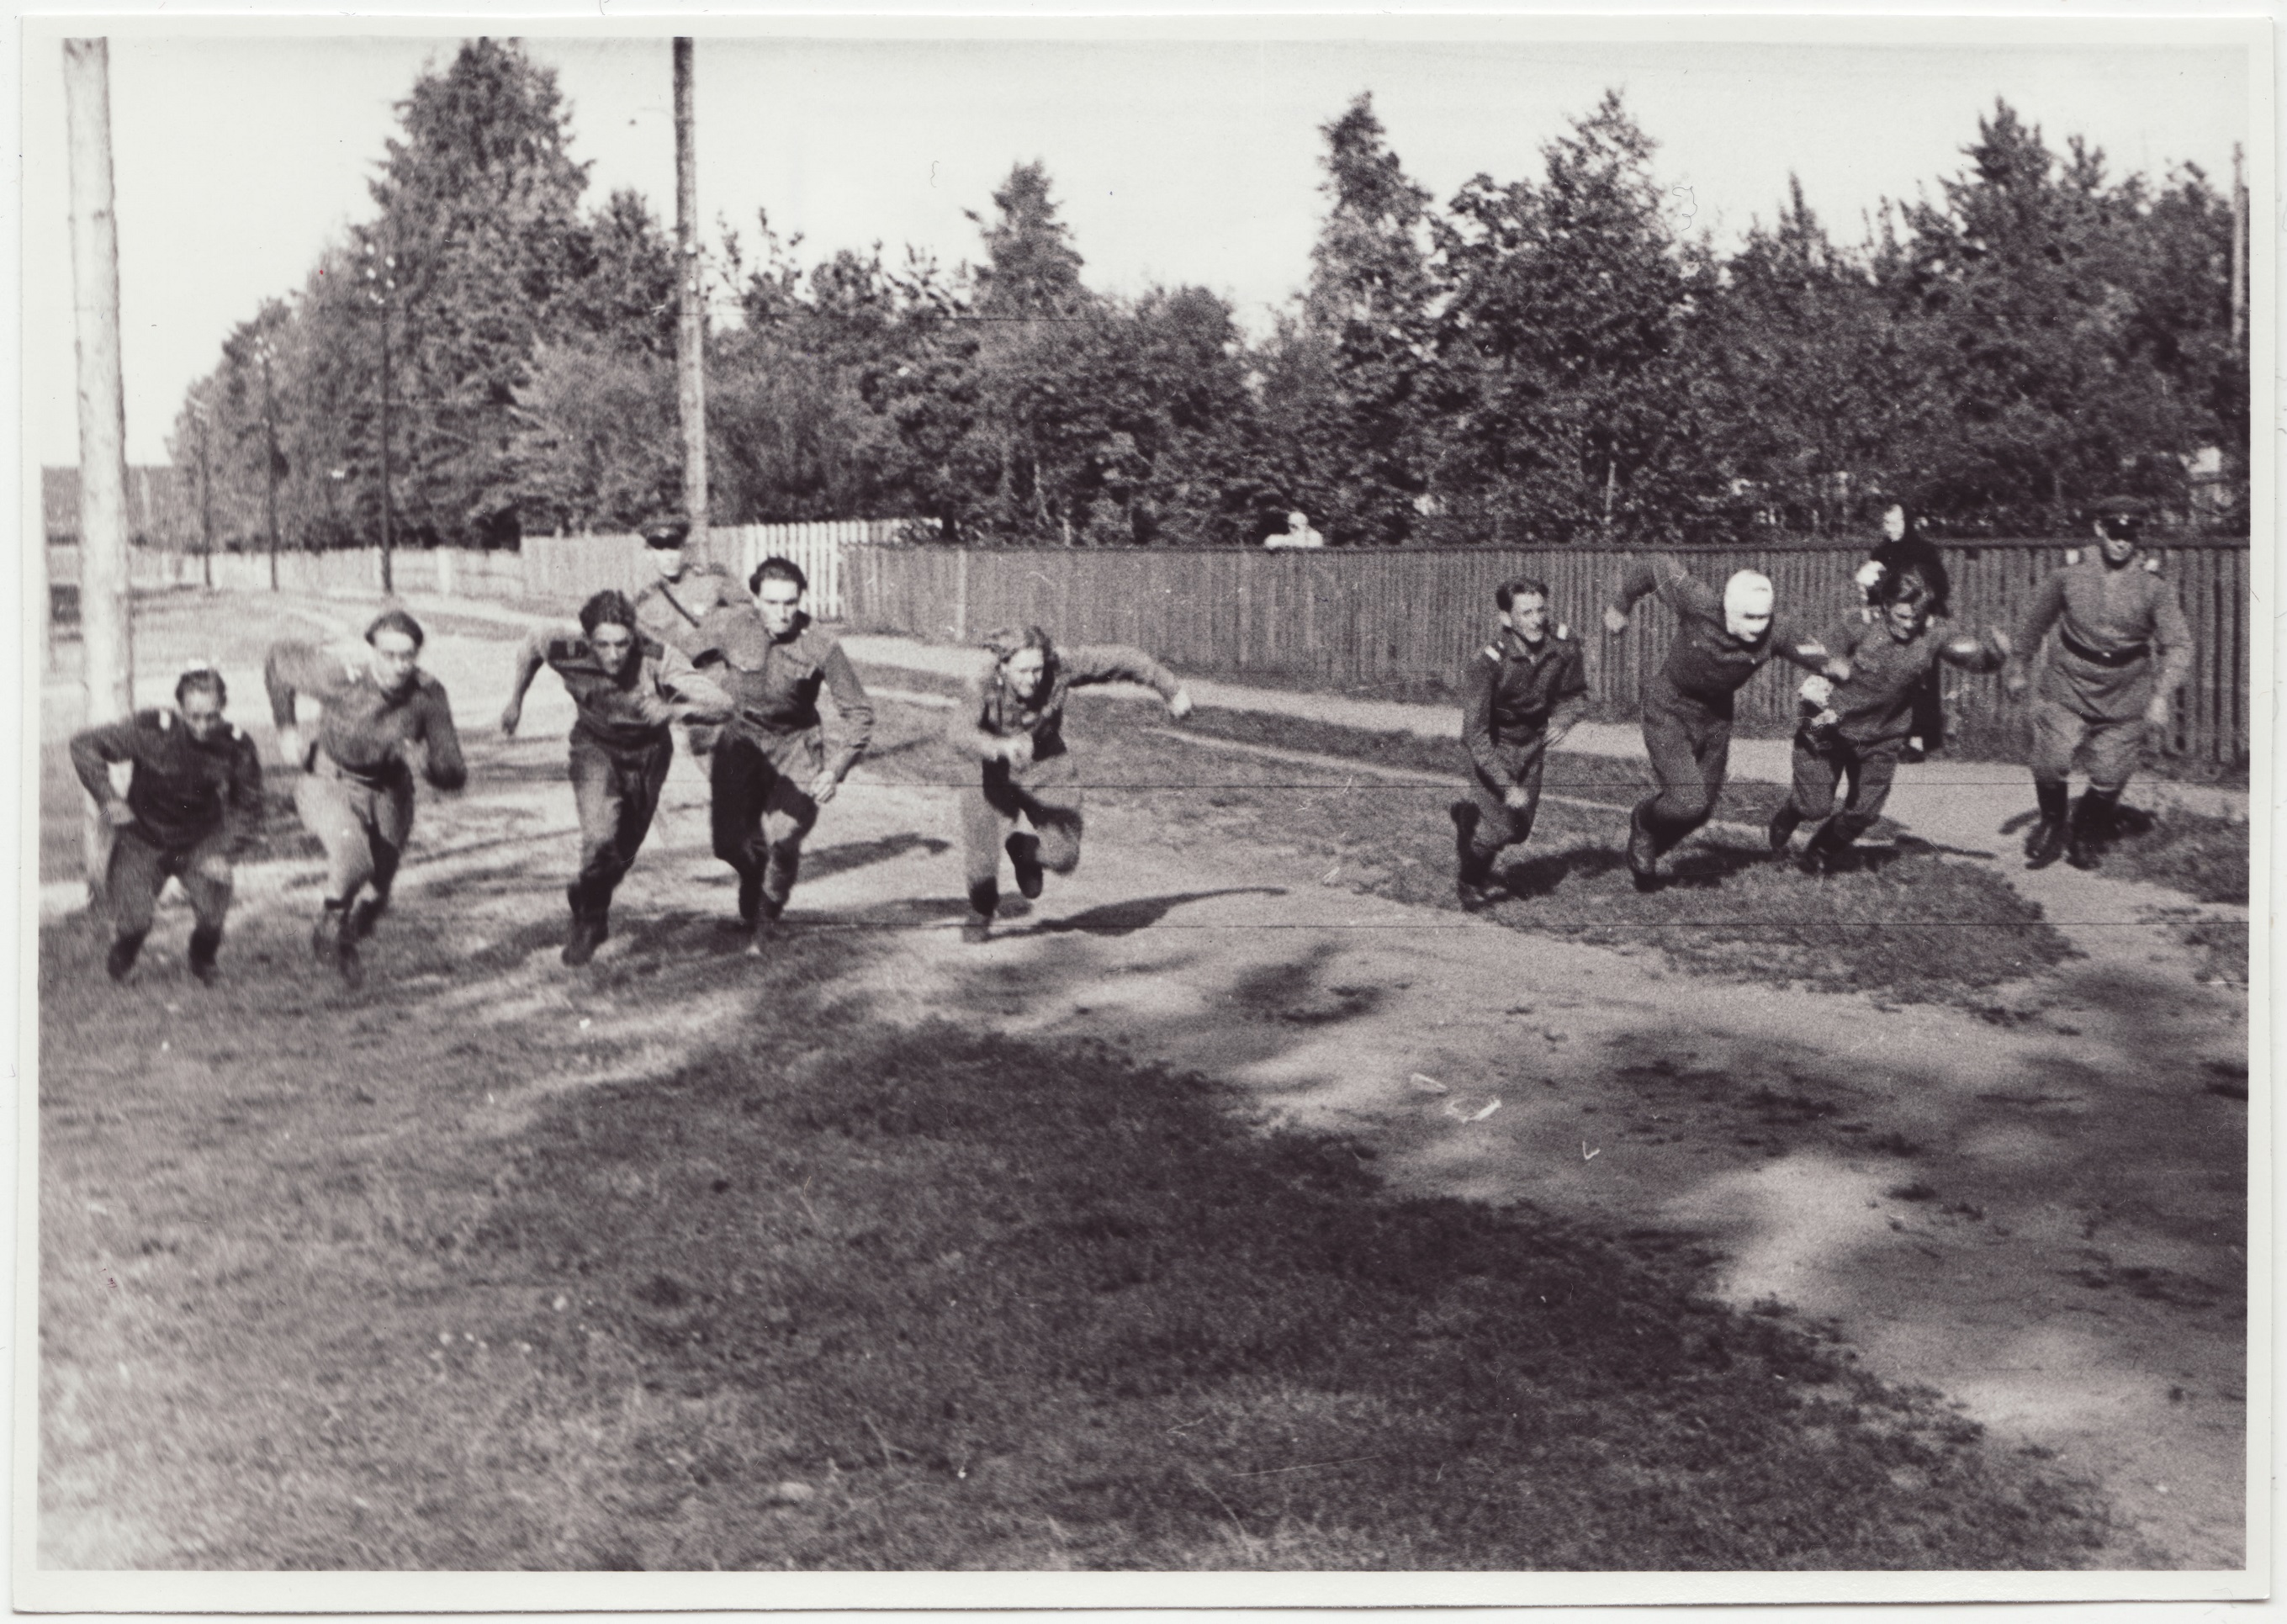 Komandodevahelised tuletõrjevõistlused Tallinnas: Tuletõrjekooli võistkond võistlushargnemise stardis, 1950.a.